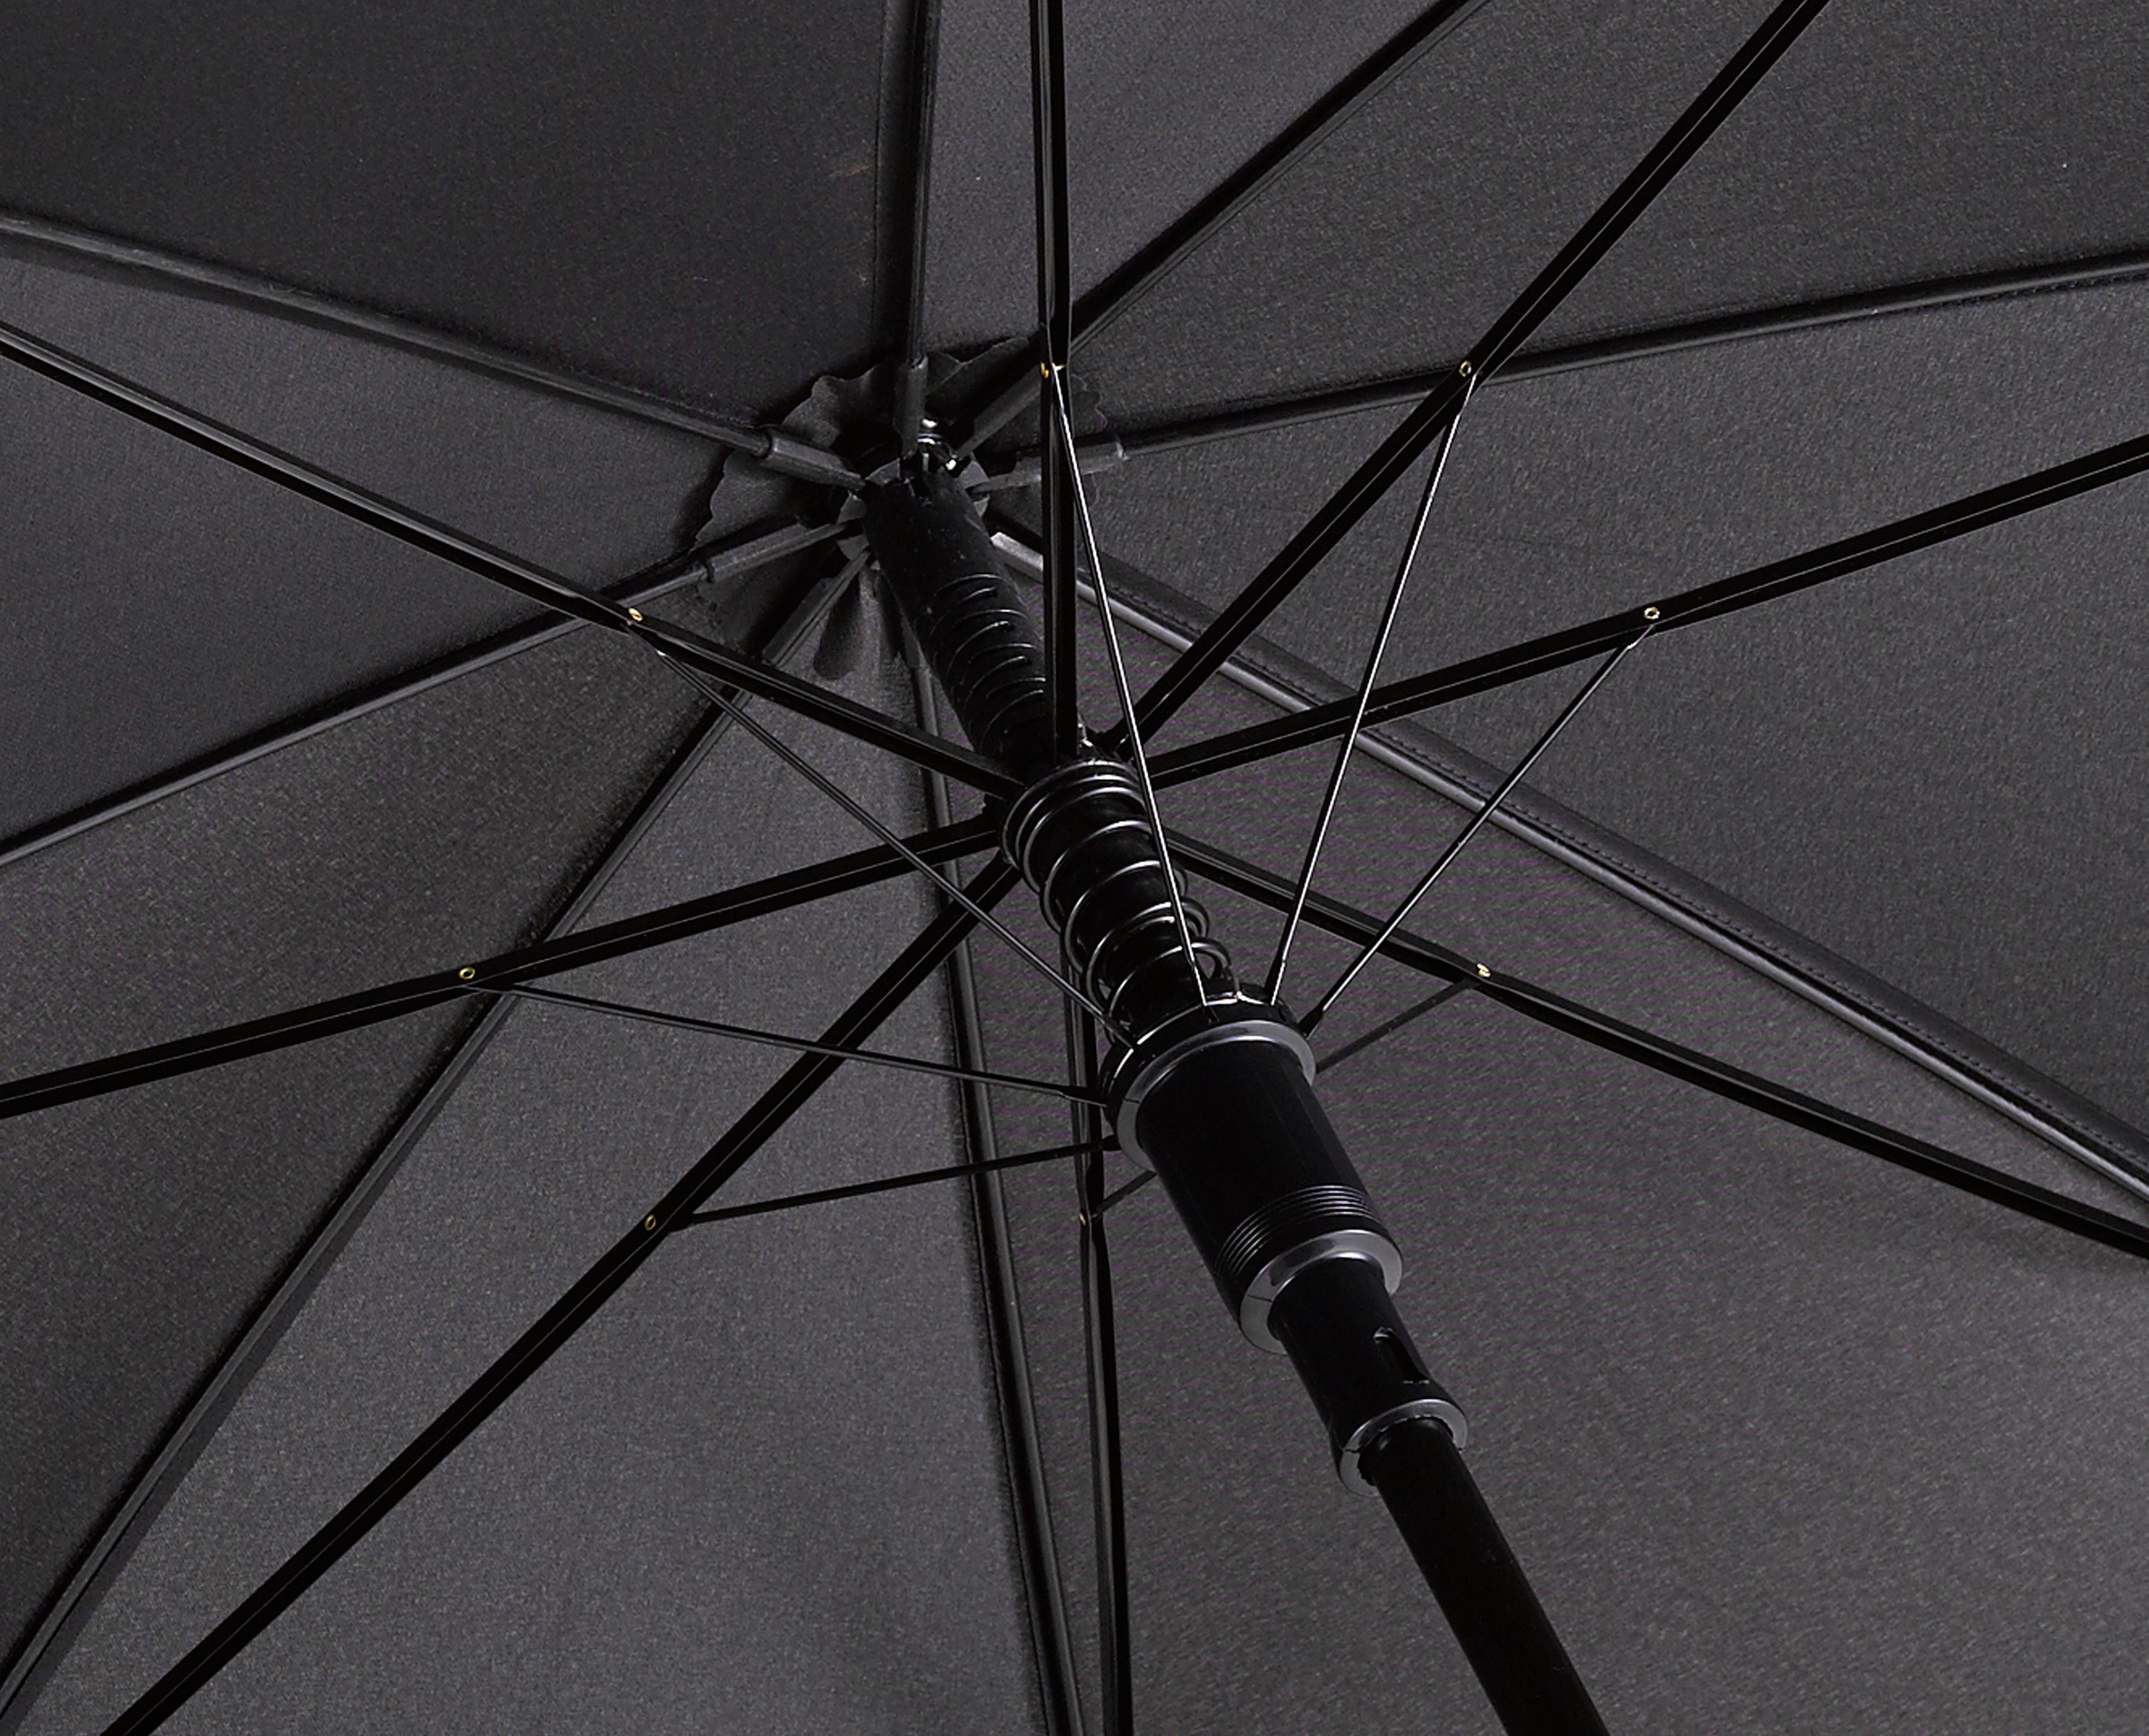 EuroSCHIRM® Partnerschirm »Automatik W130, schwarz«, Regenschirm für Zwei, mit Automatik, Griff aus Holz, extra großes Dach